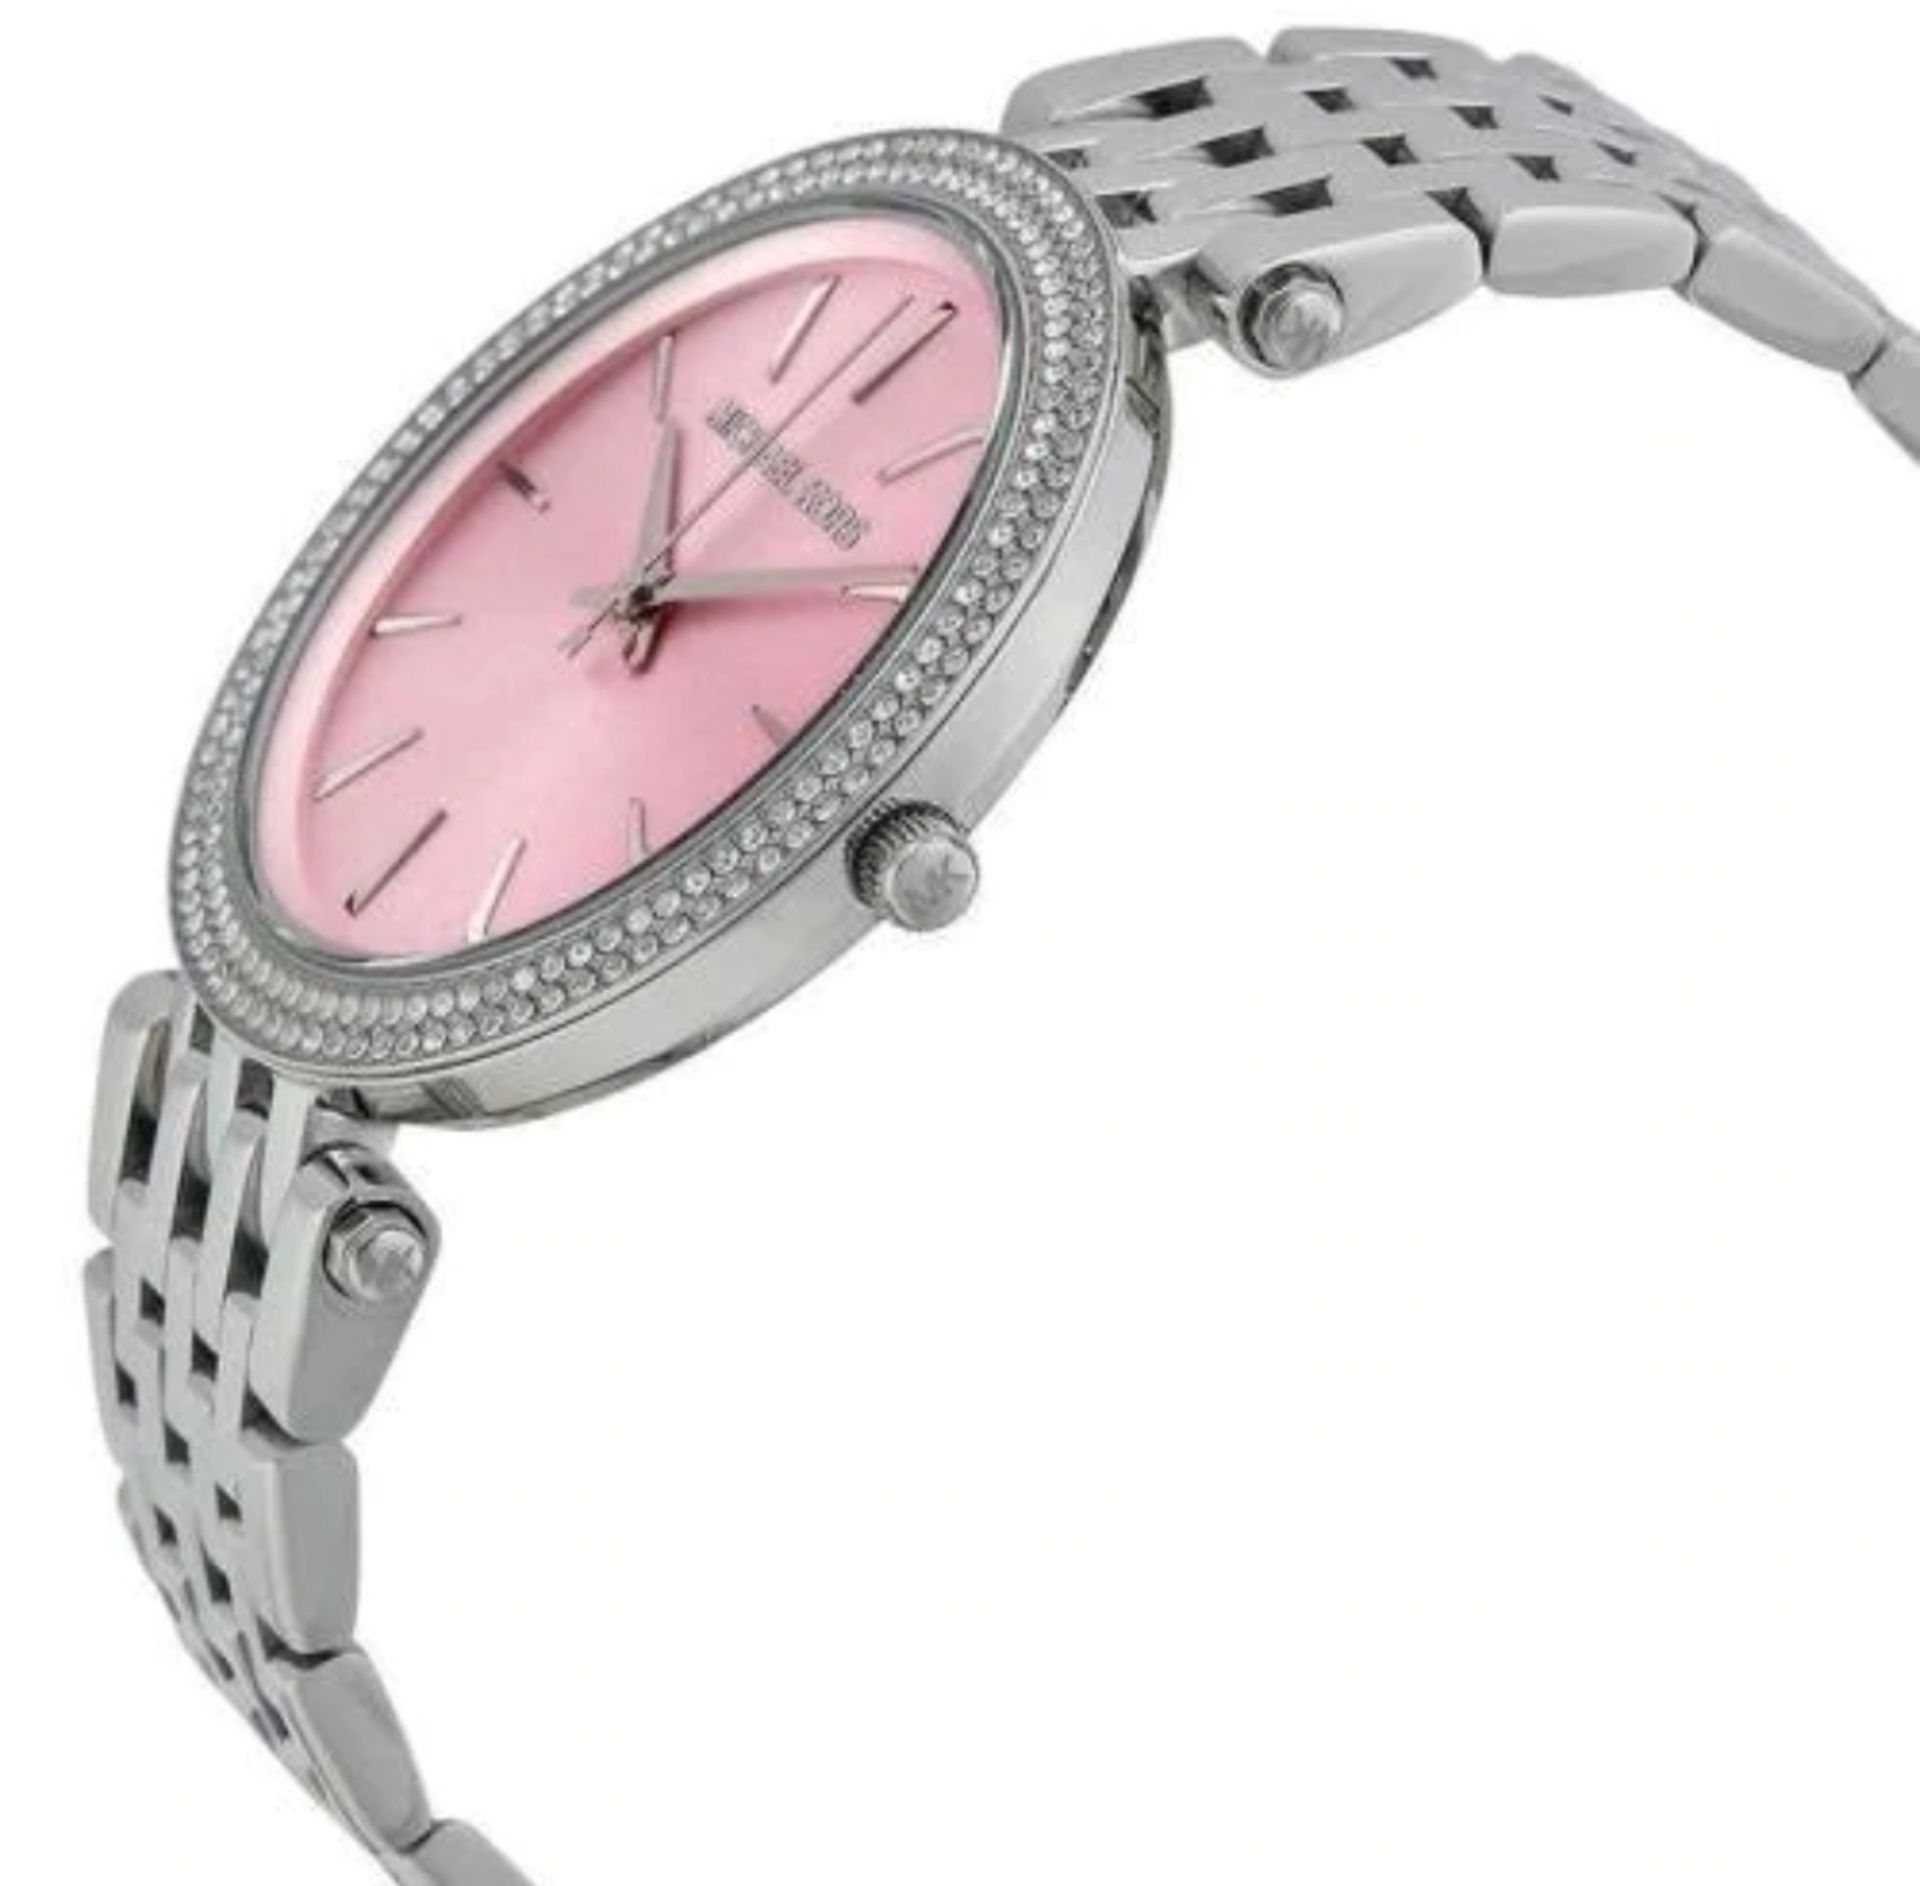 Michael Kors MK3352 Darci Pink & Silver Stainless Steel Ladies Watch - Image 4 of 8